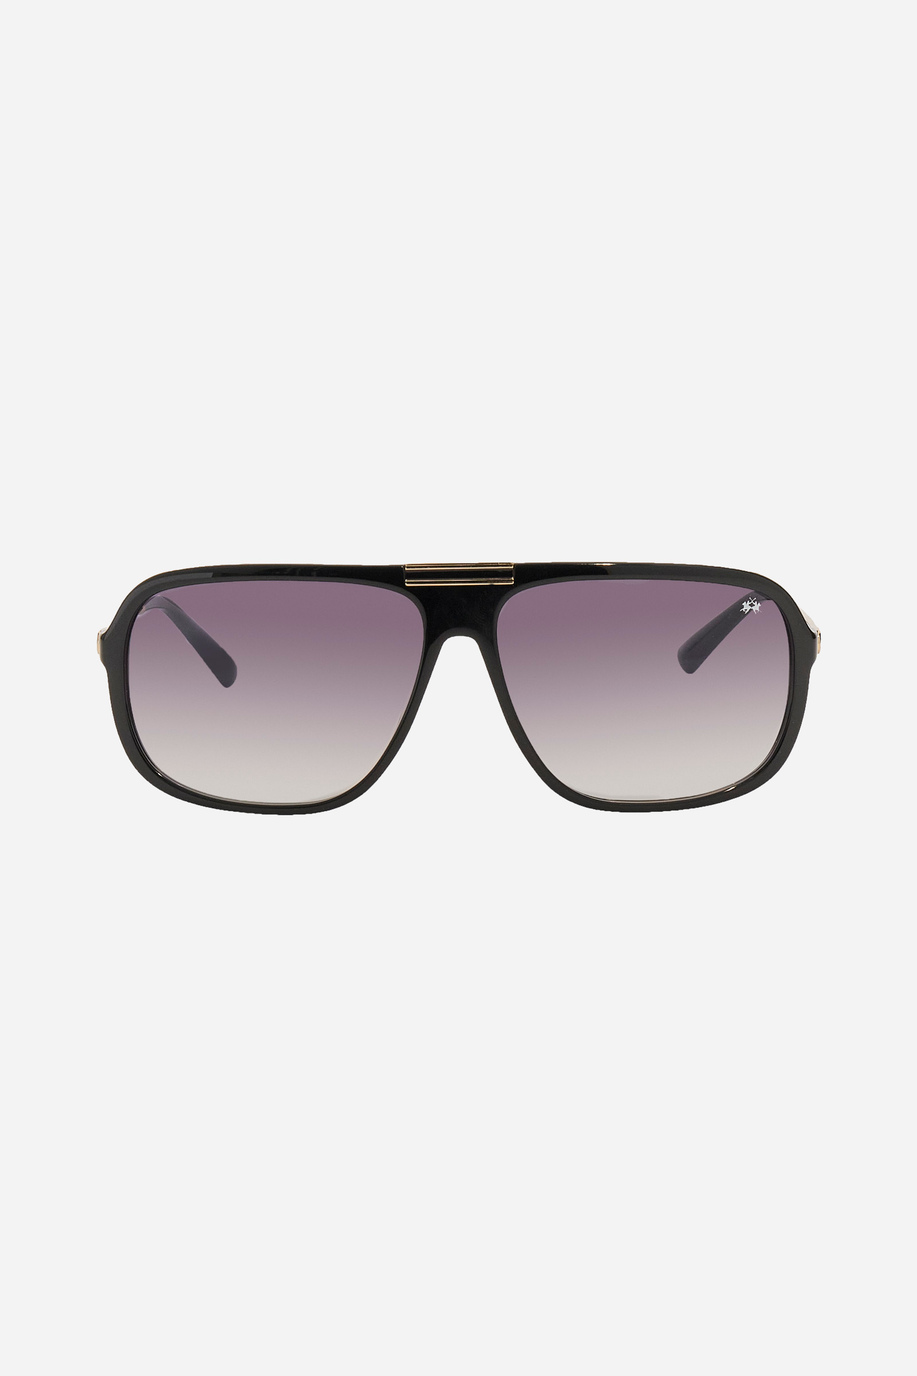 Sonnenbrille aus Metall - Unsere Favoriten für ihn | La Martina - Official Online Shop